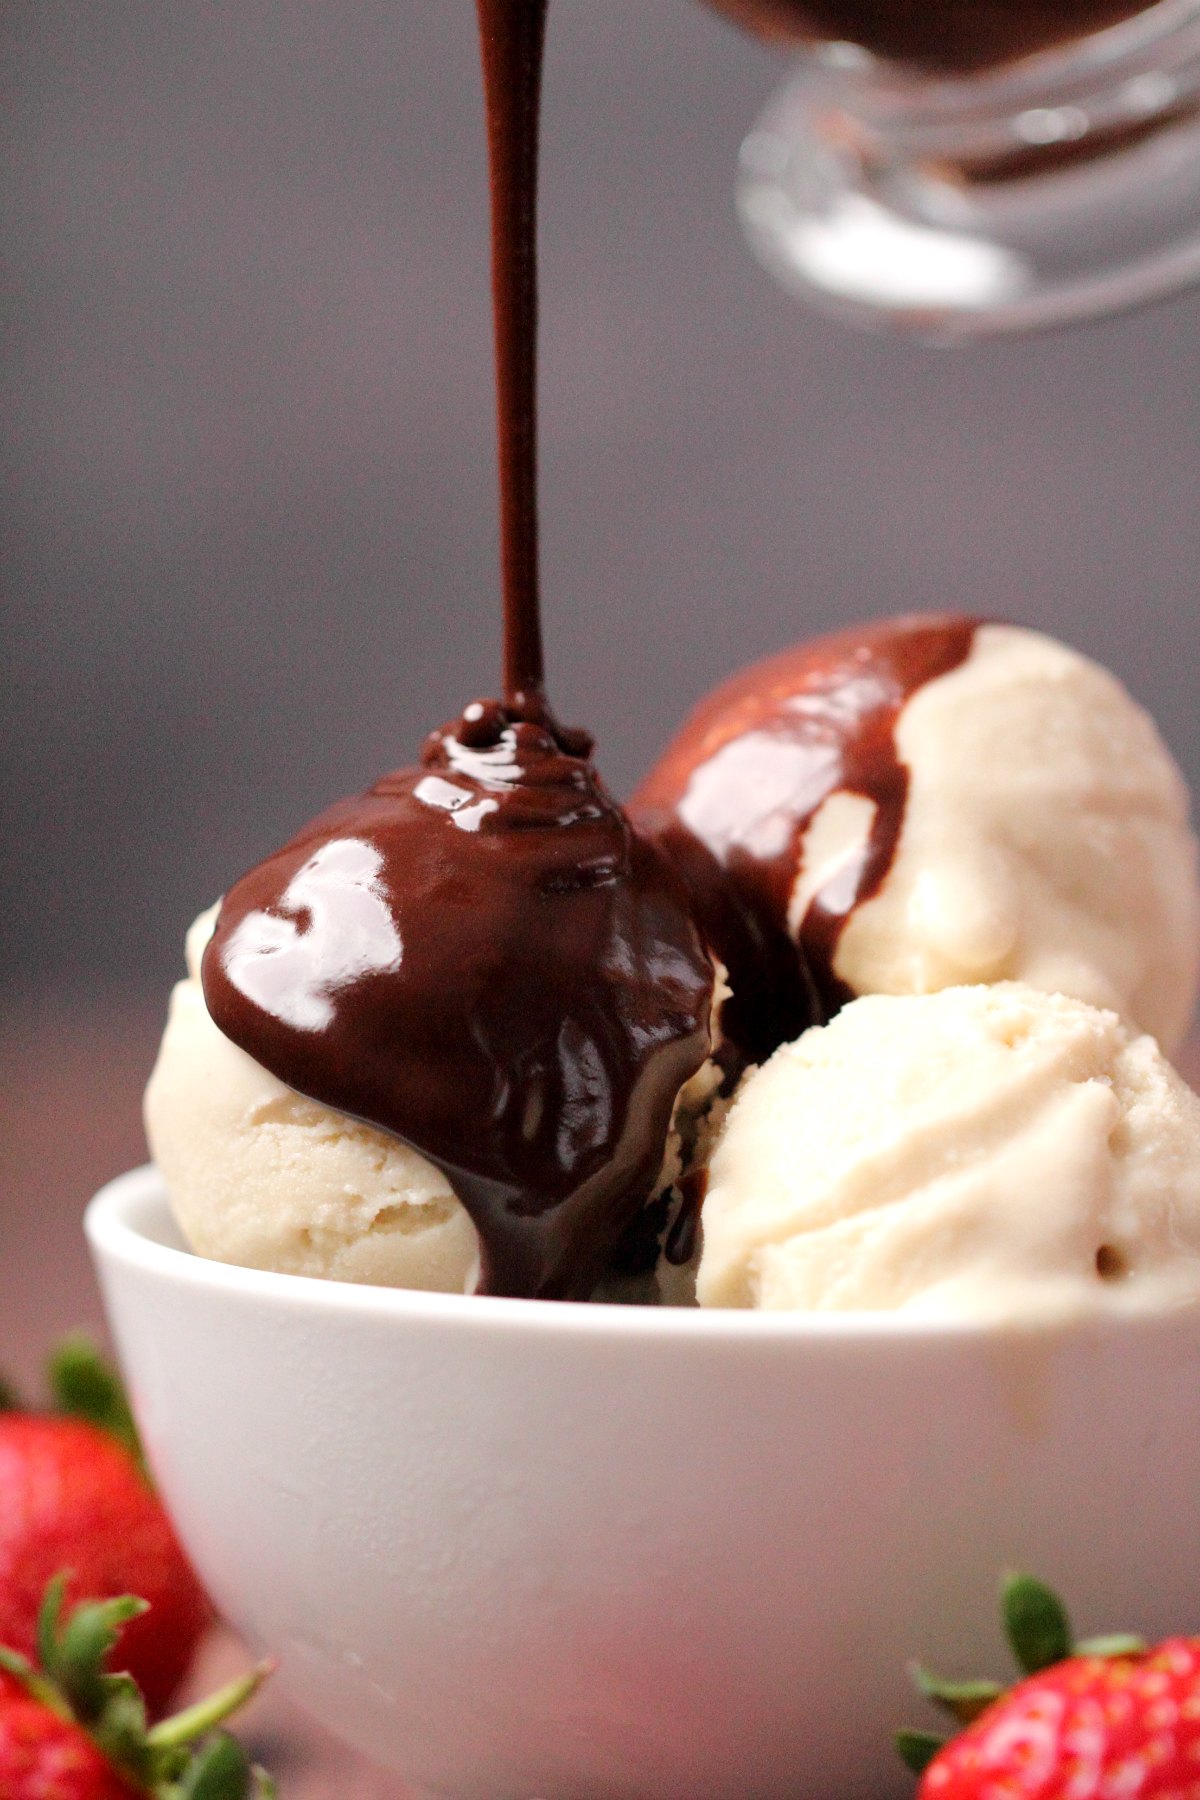 흰색 그릇에 아이스크림 위에 붓는 초콜릿 소스. 